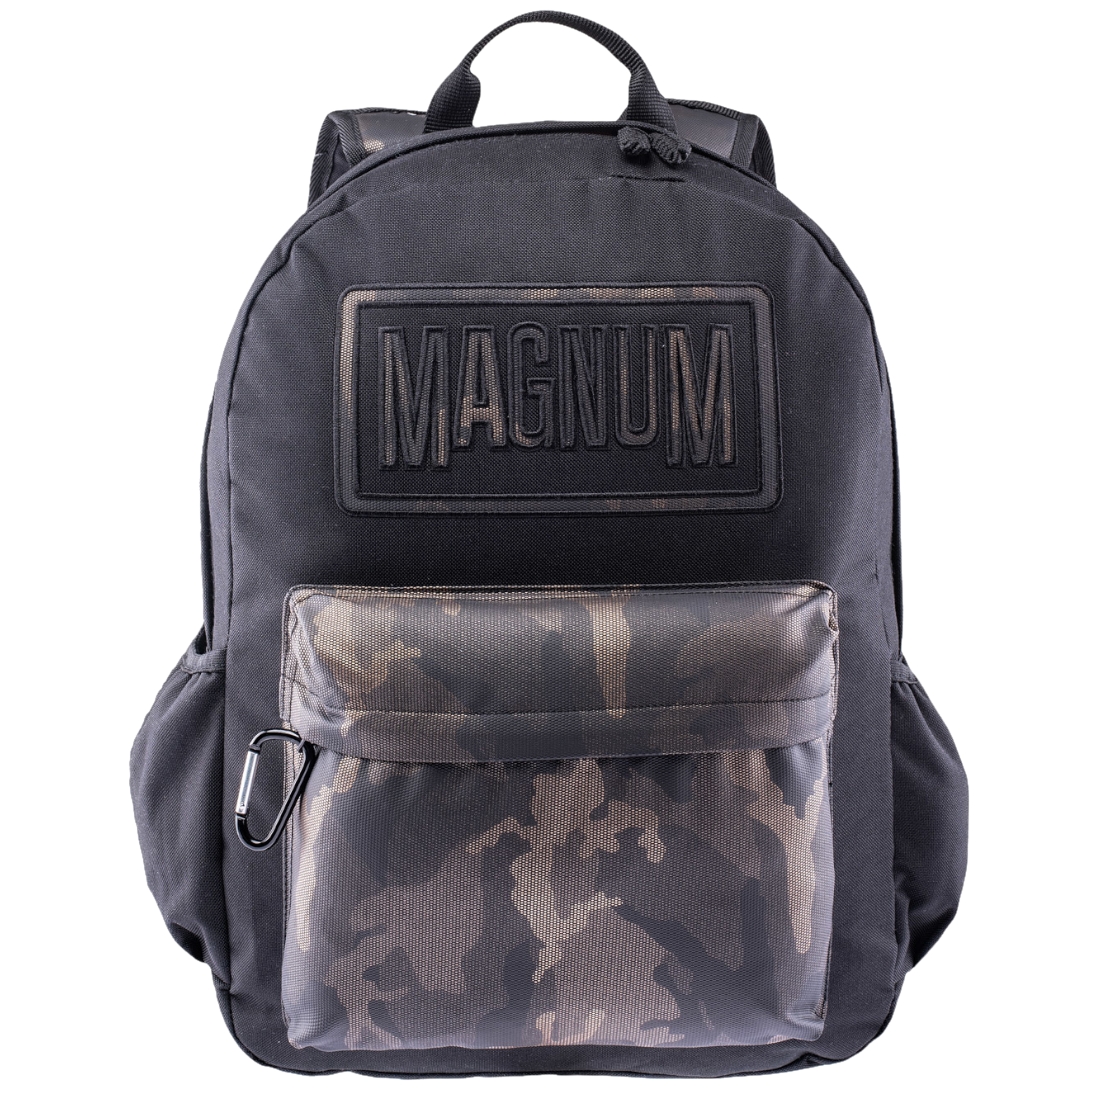 Рюкзак Magnum Magnum Corps, черный magnum magnum